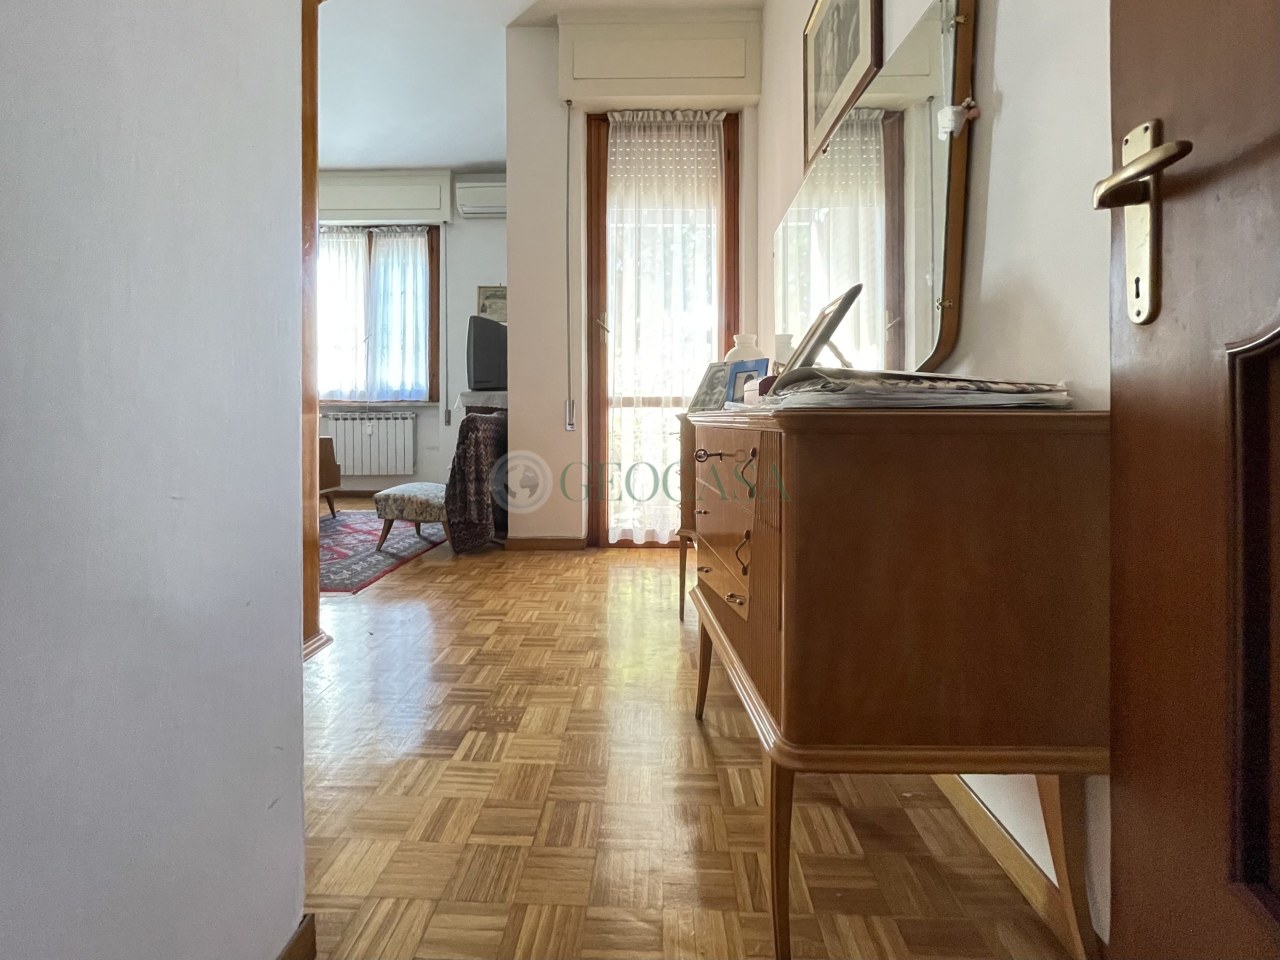 Appartamento in vendita a Sarzana, 6 locali, prezzo € 220.000 | PortaleAgenzieImmobiliari.it